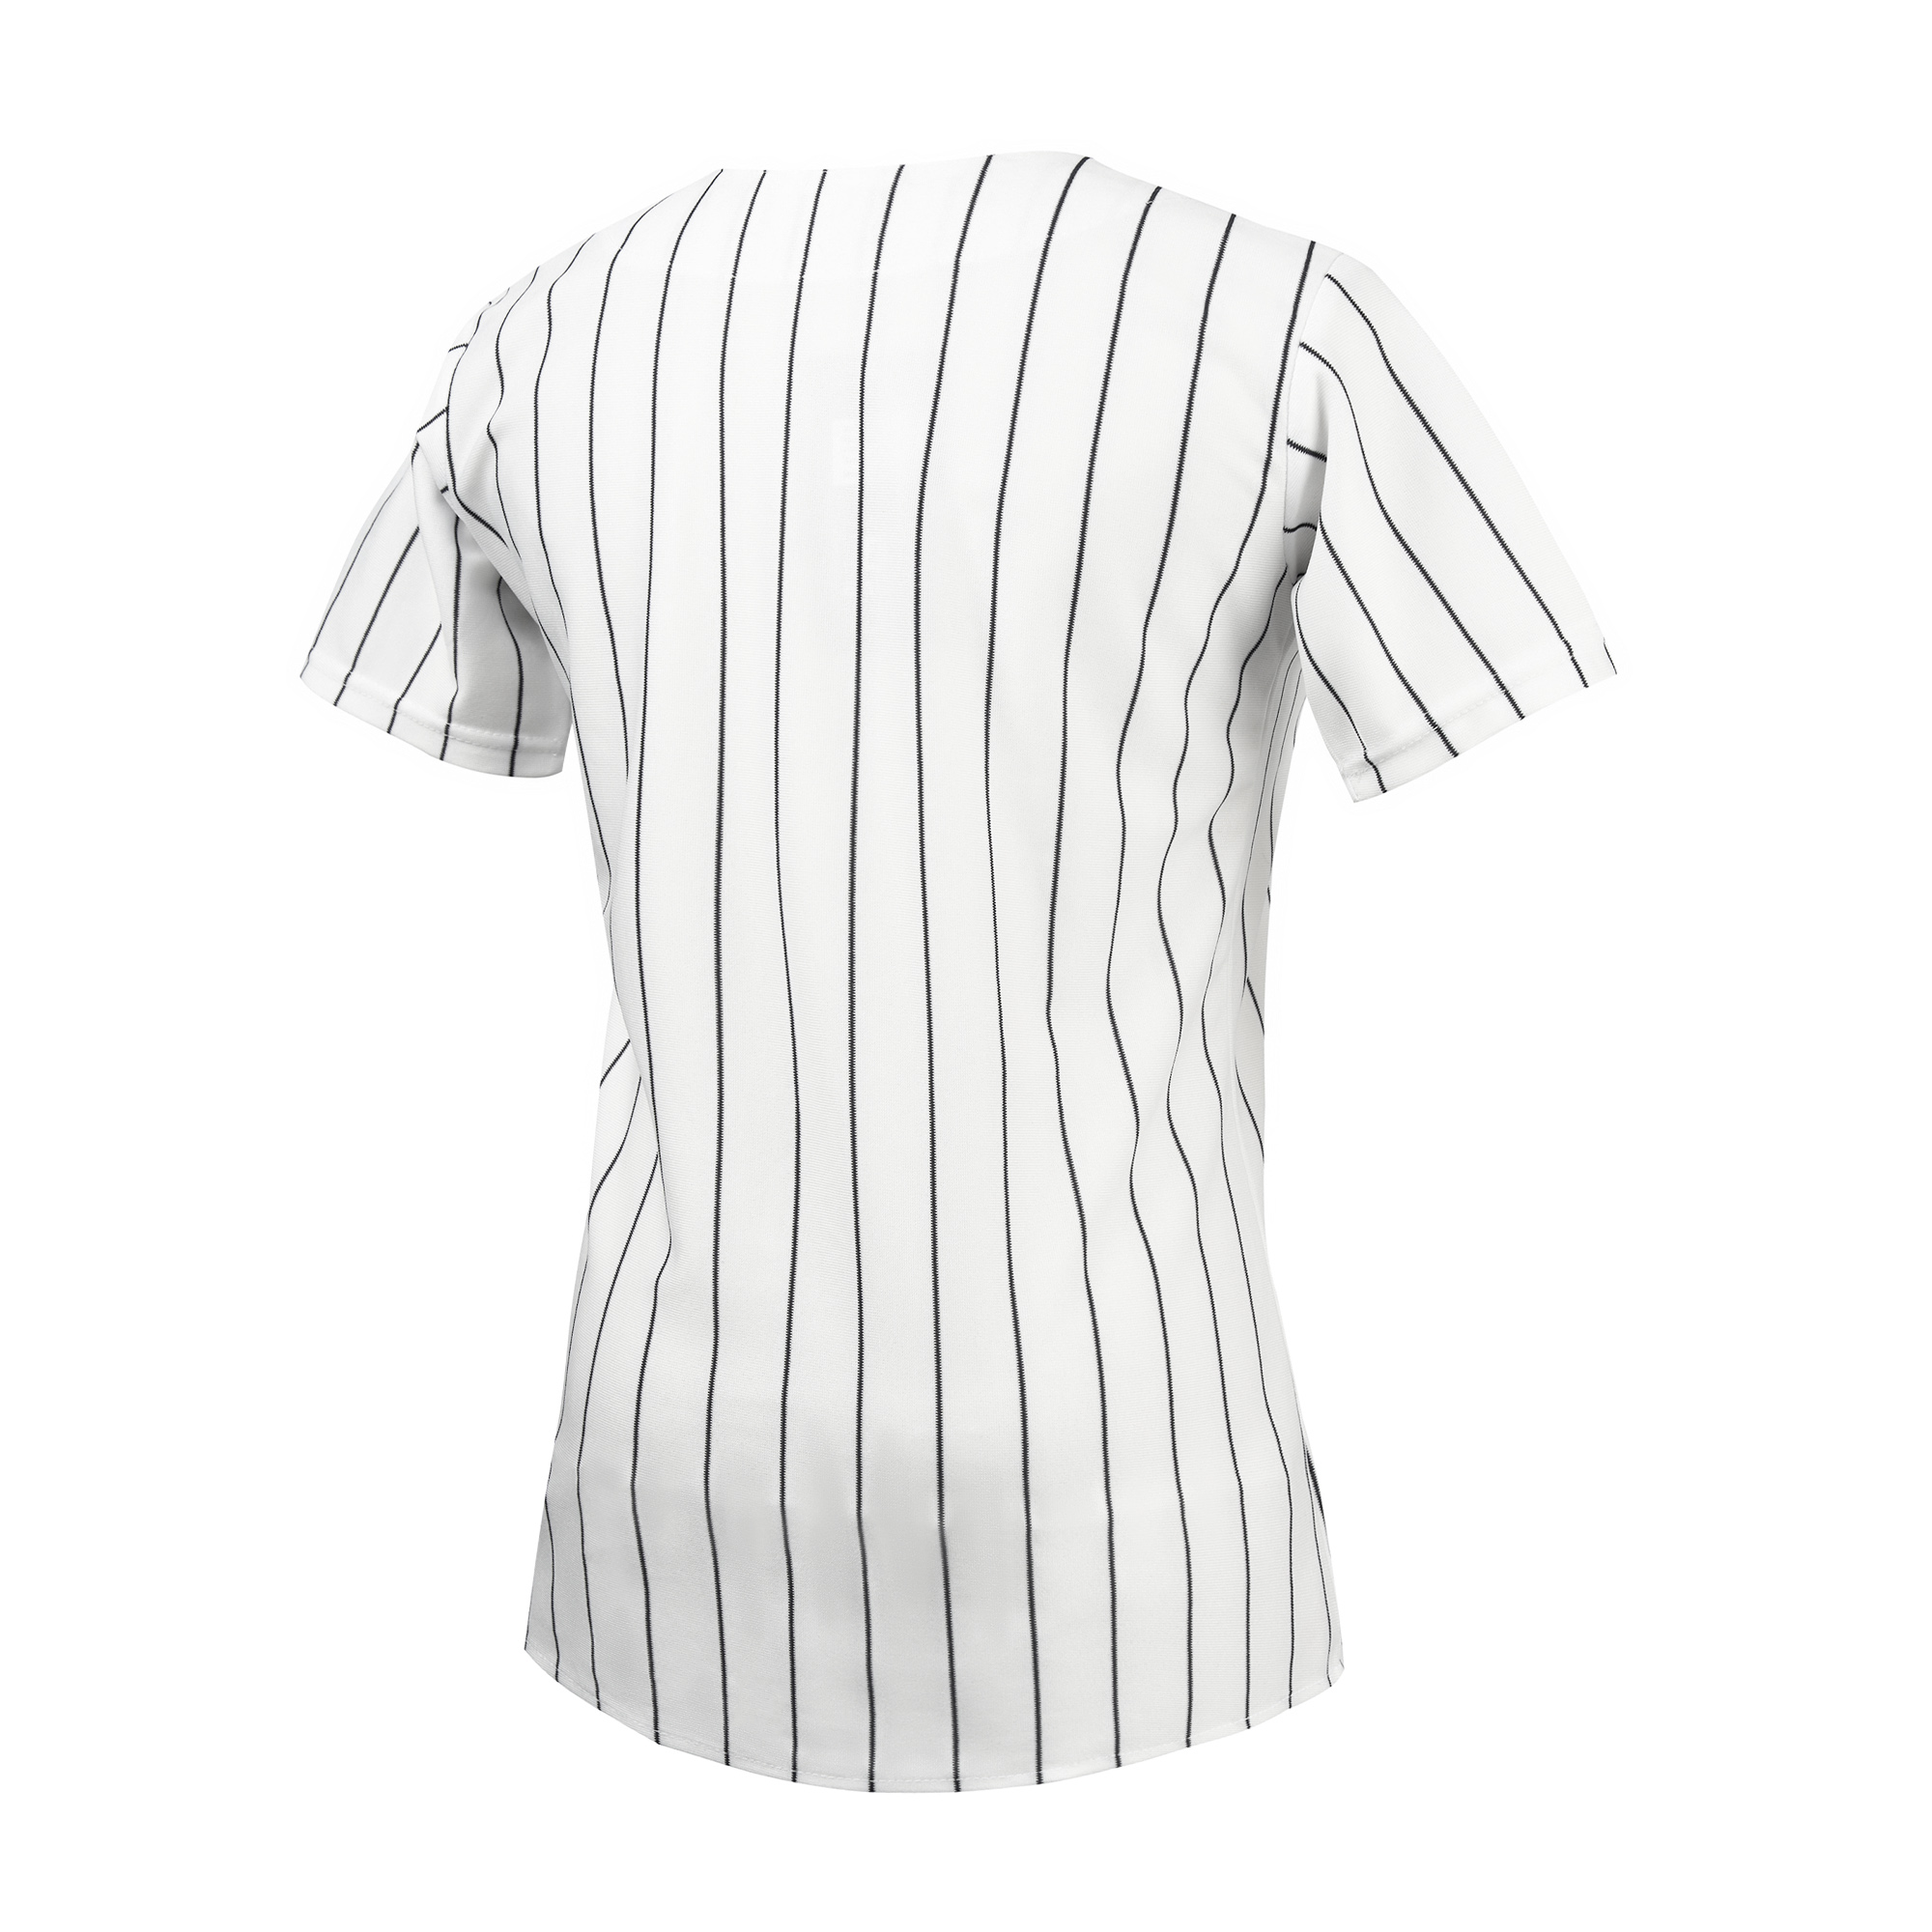 EALER BJW80 Series Women's Baseball Jersey Button Down Shirts